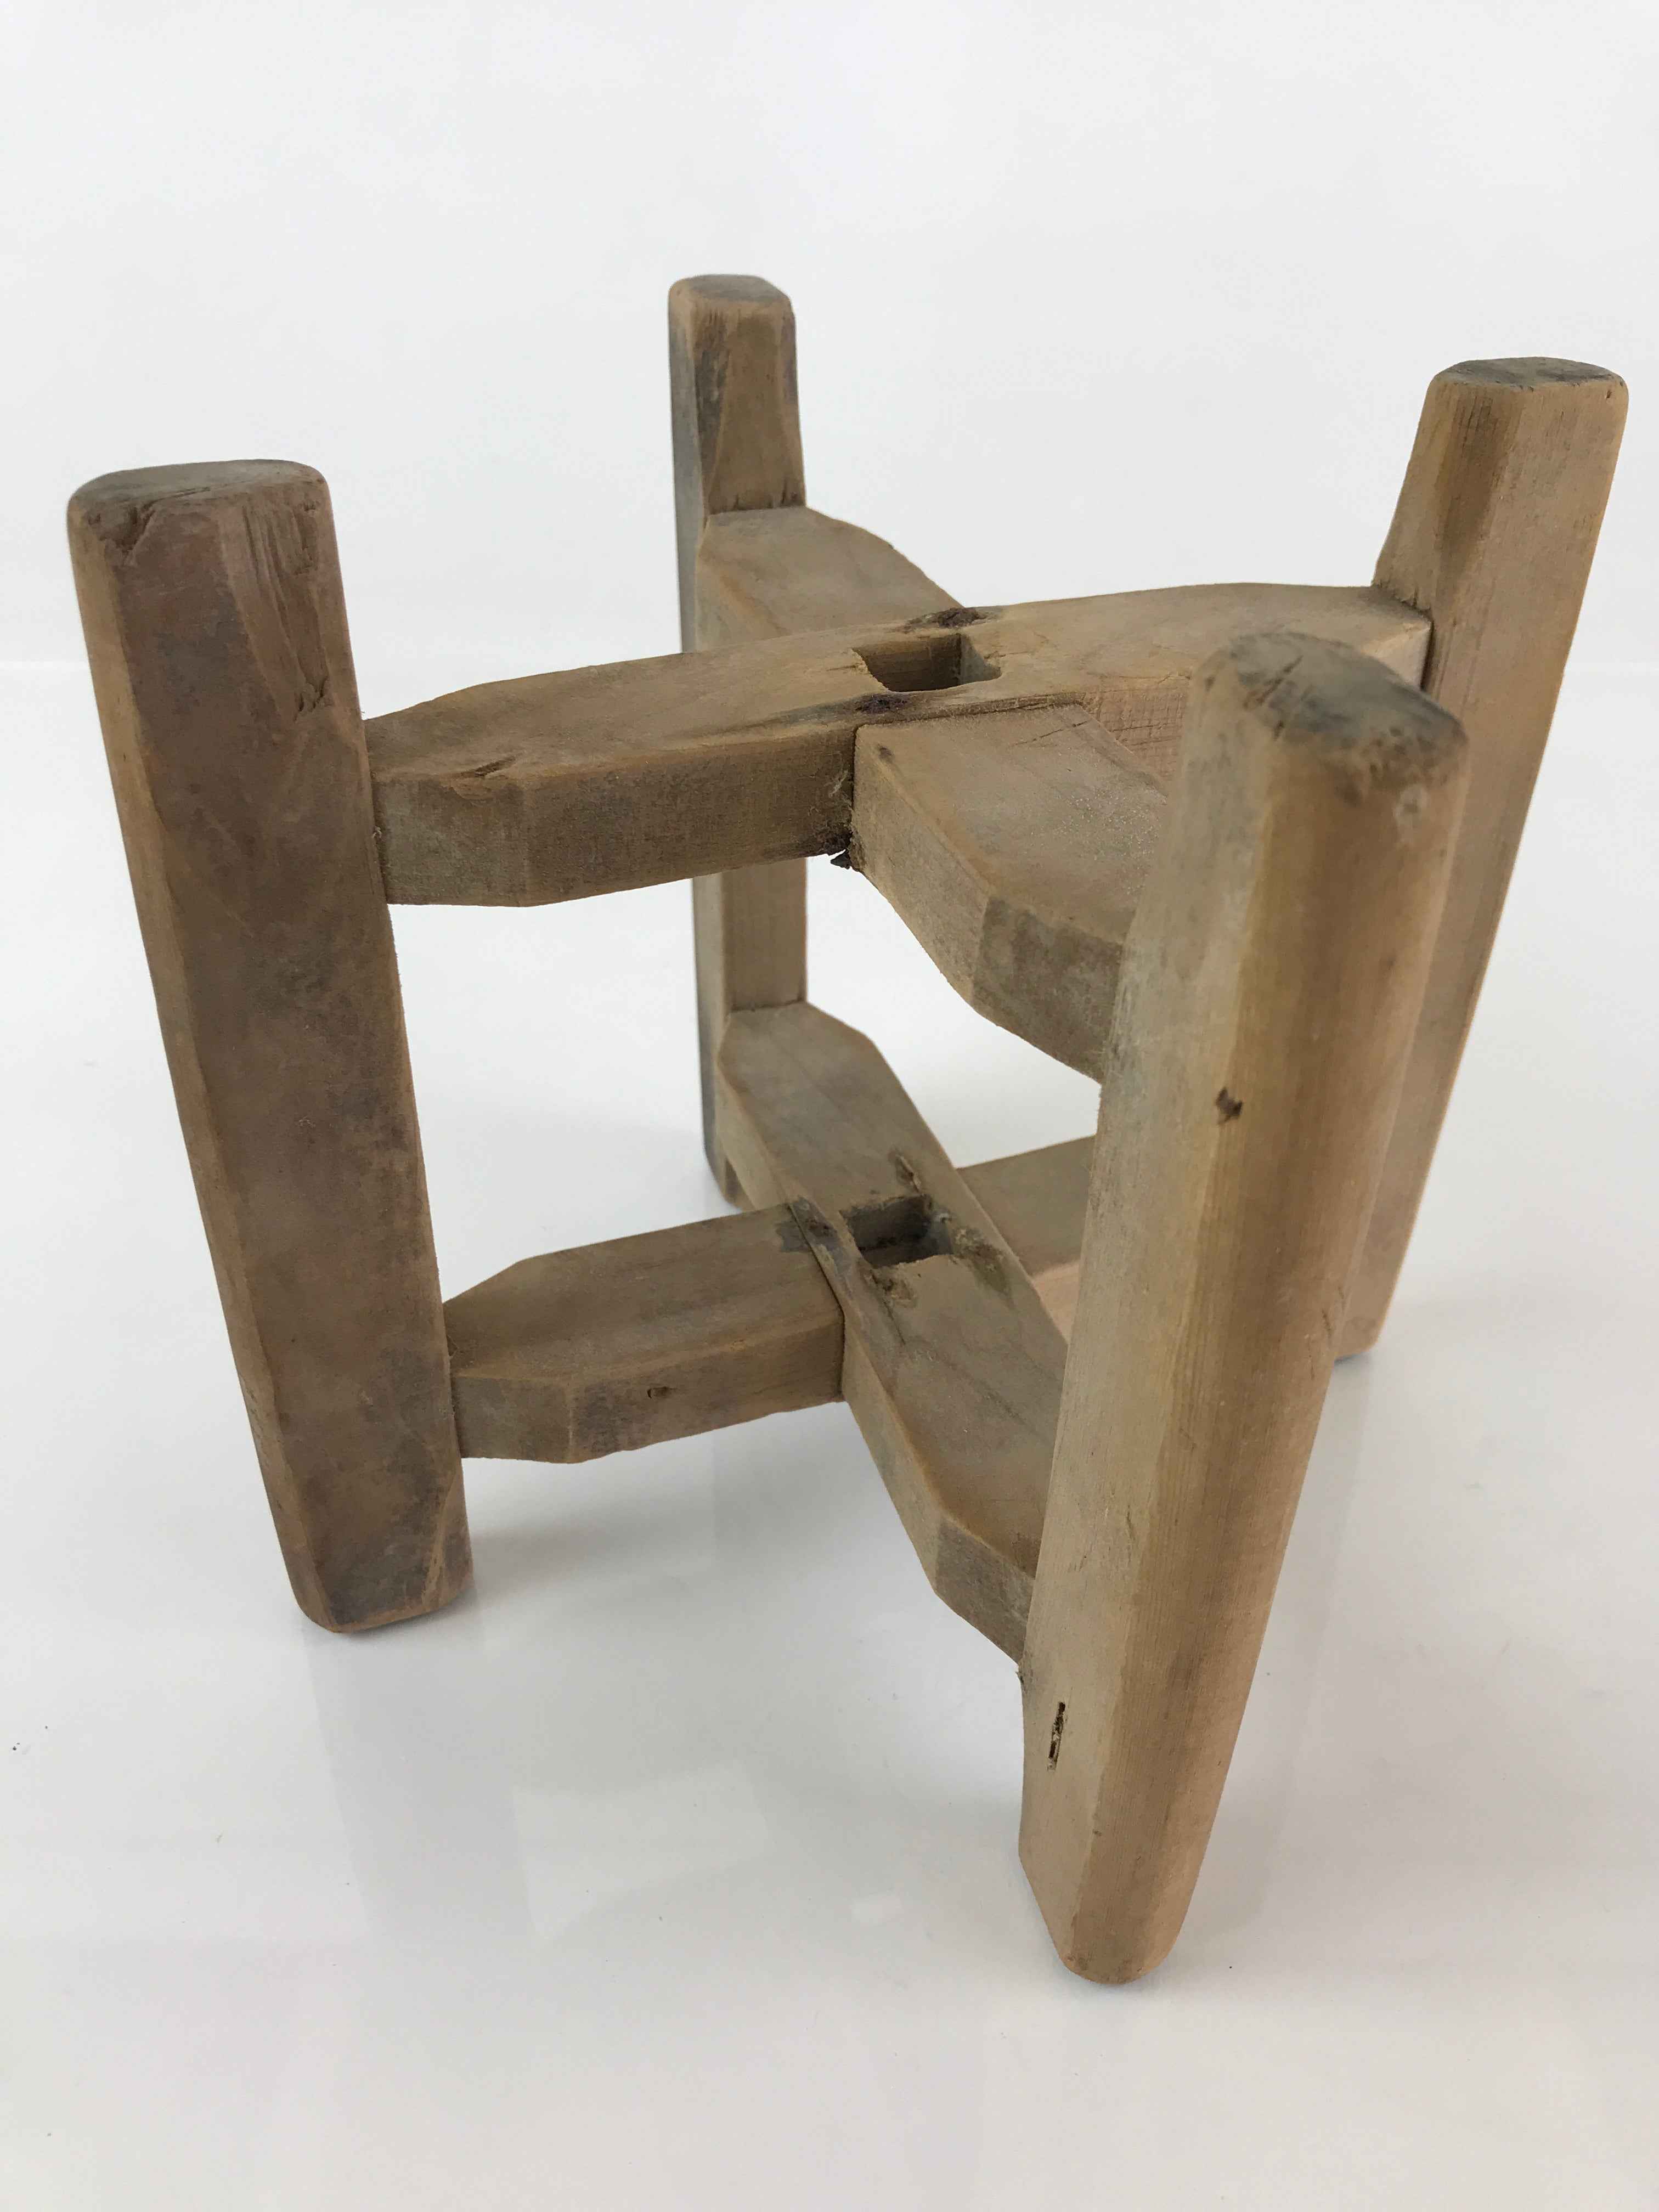 Japanese Wooden Spool Itomaki Vtg Thread Winding Frame Spinning Wheel JK415